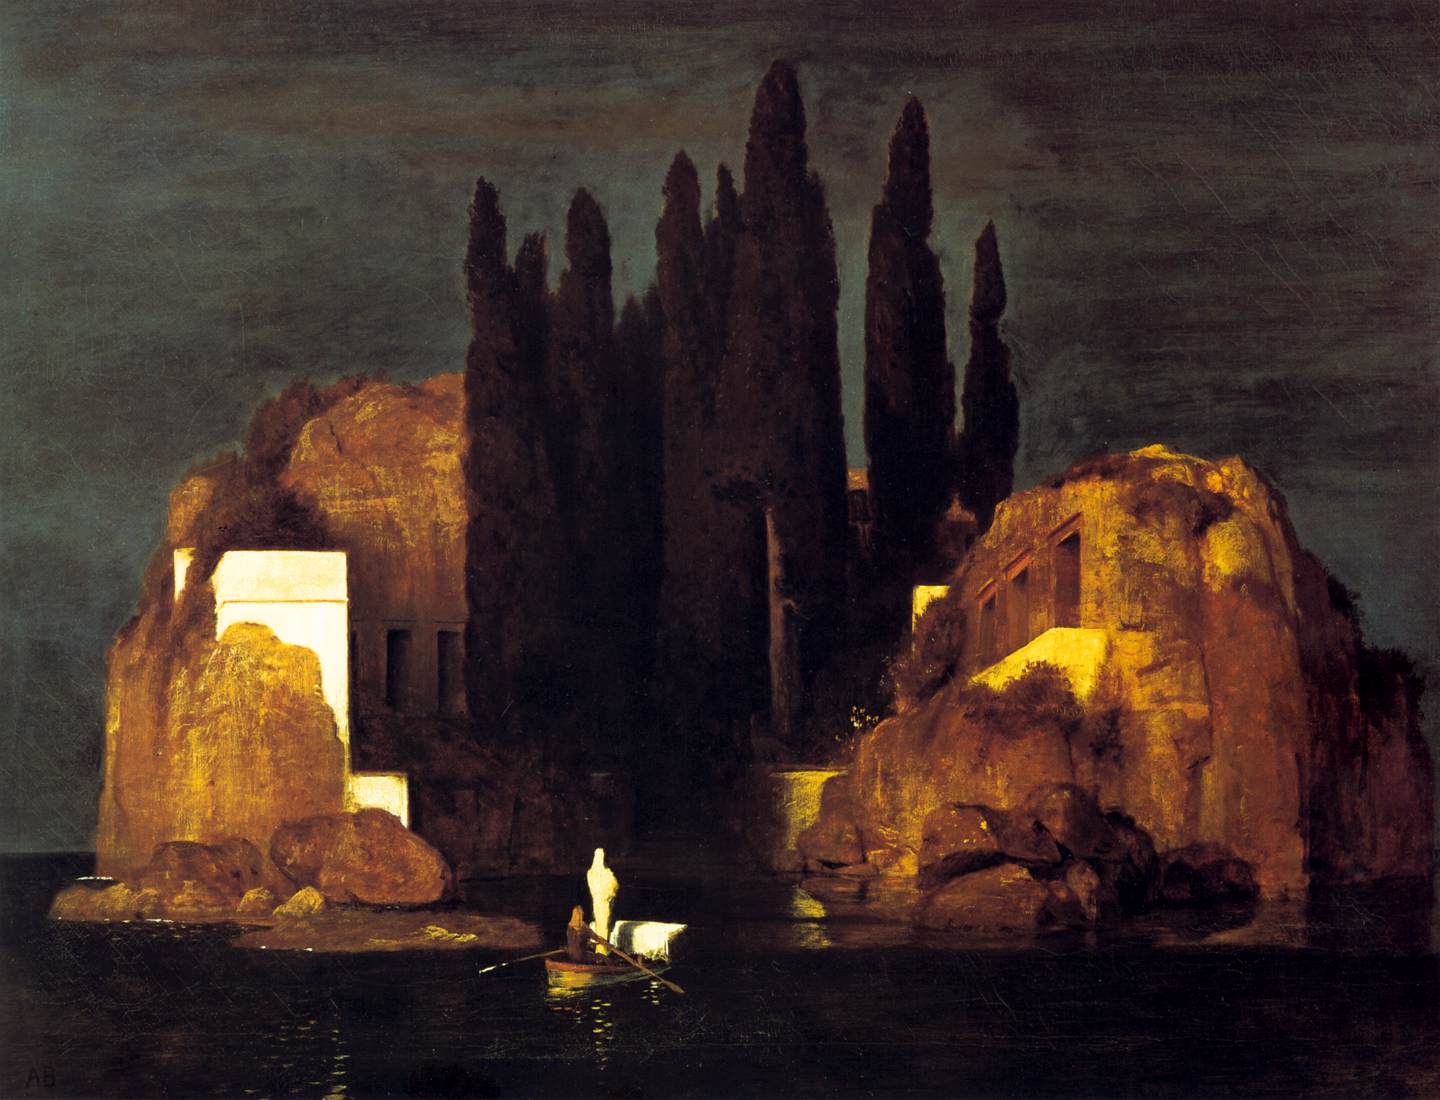 l'île des morts, oeuvre mythique de l'artiste peintre arnold bocklin